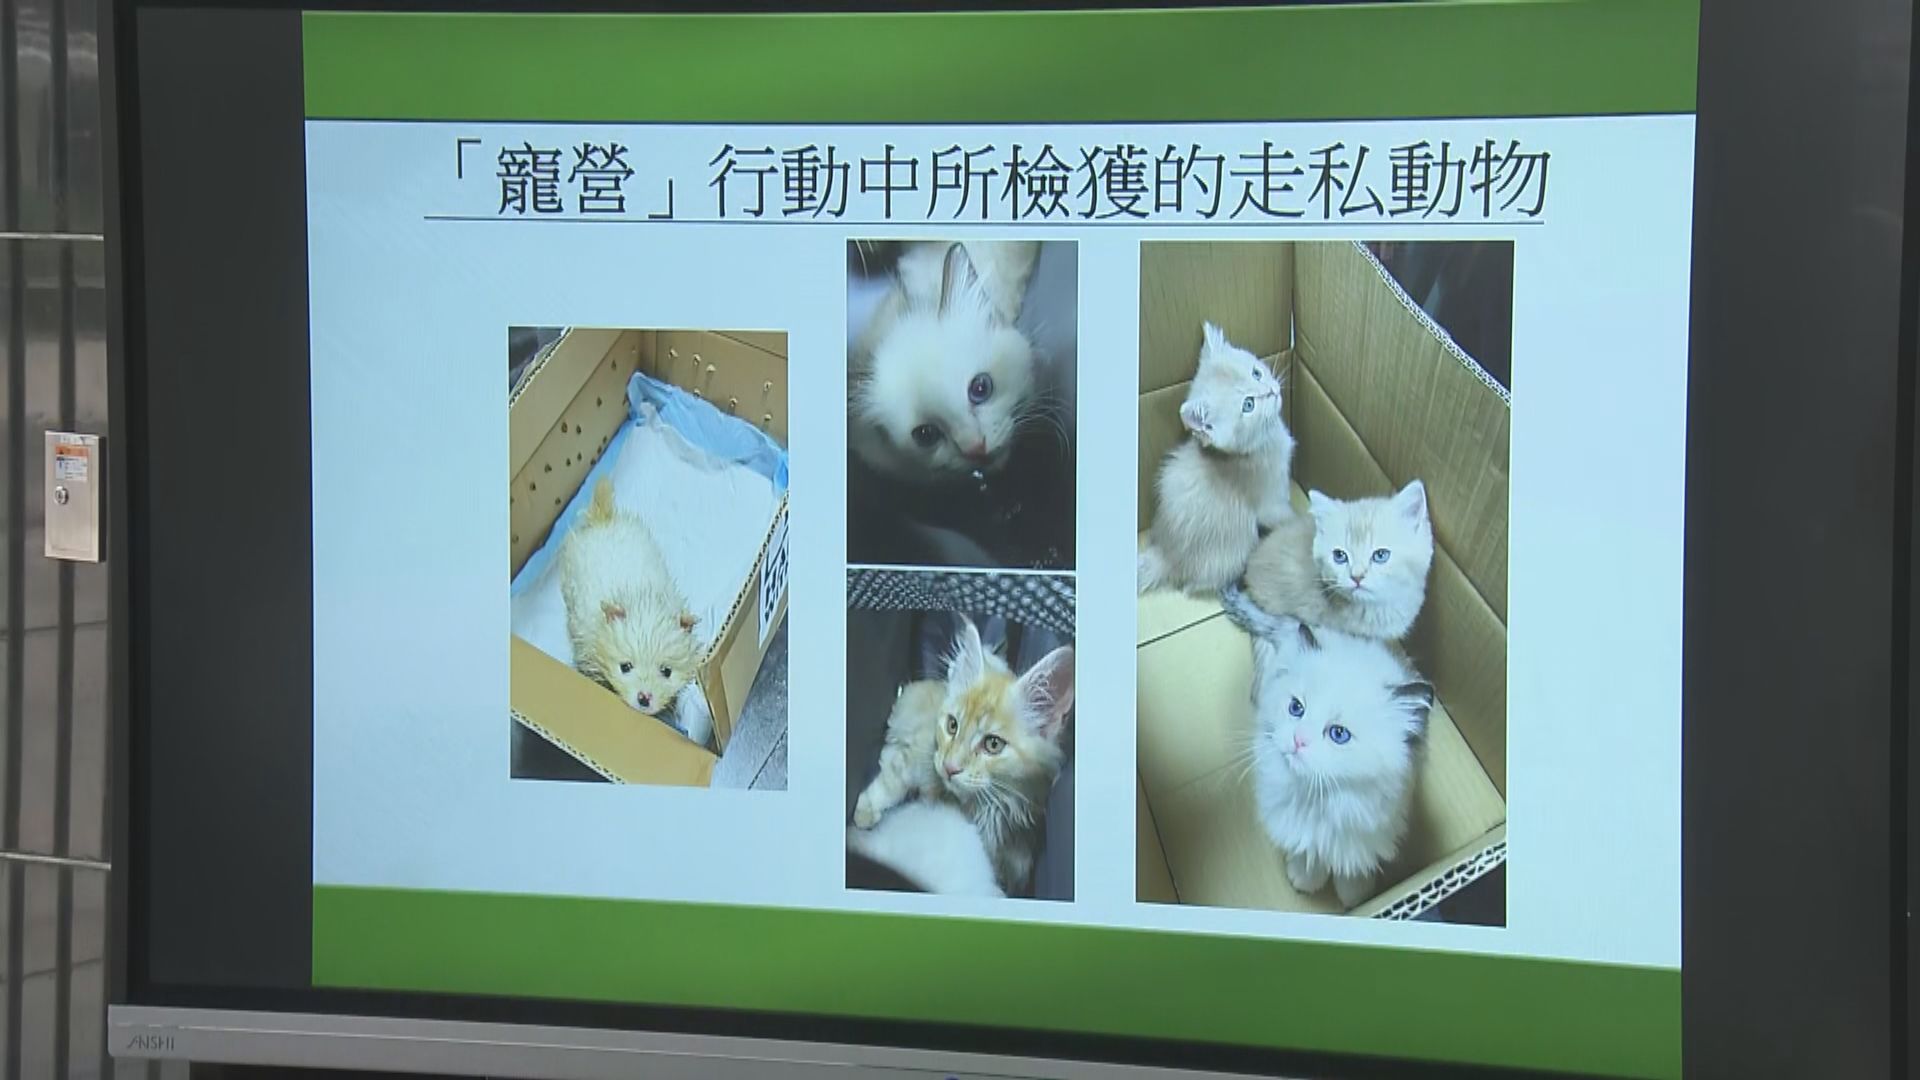 海關偵破走私動物案拘兩人 檢獲7隻貓狗